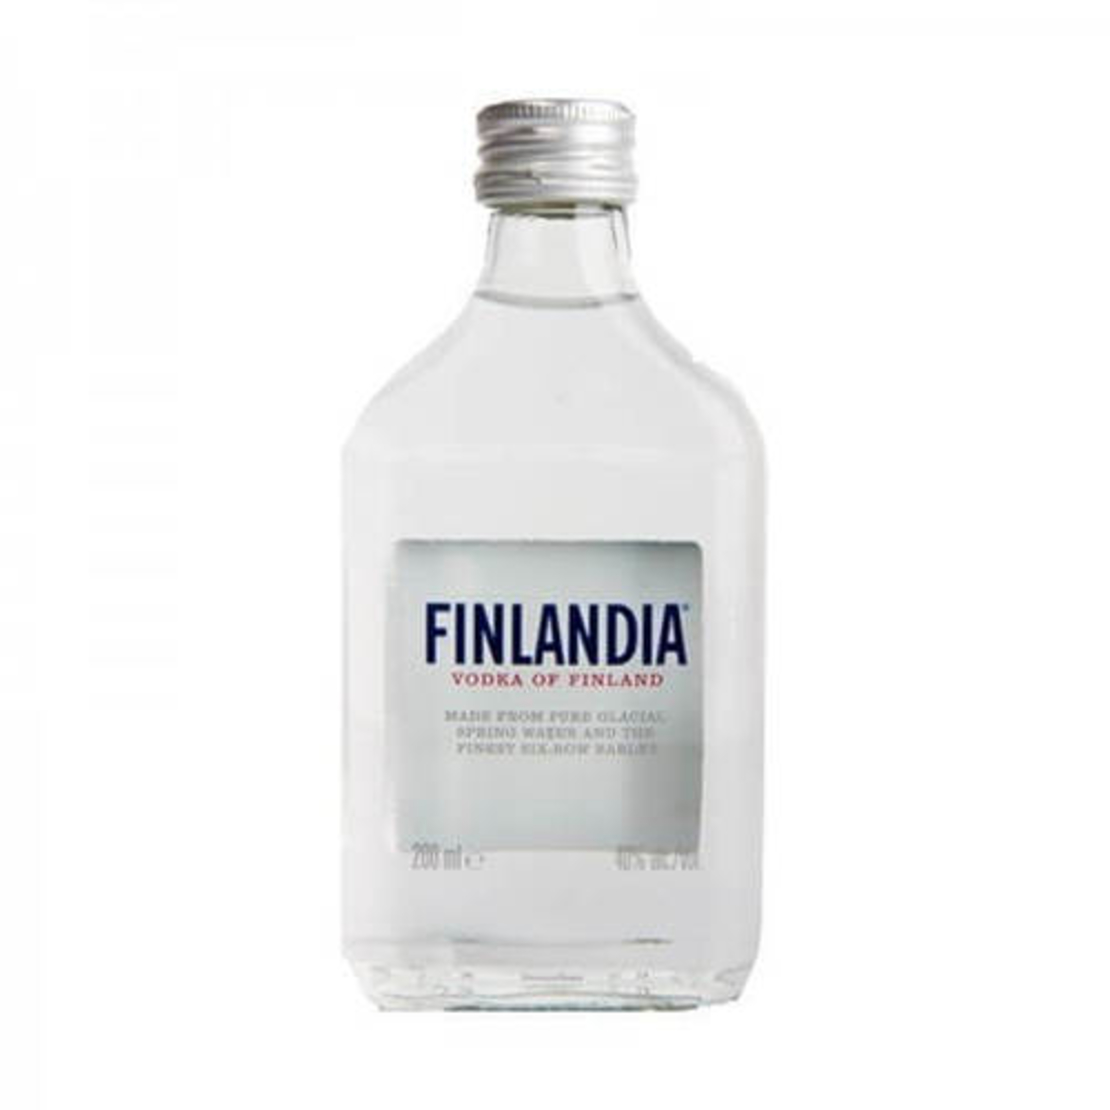 Finlandia - Vodka Of Finland 200ml small